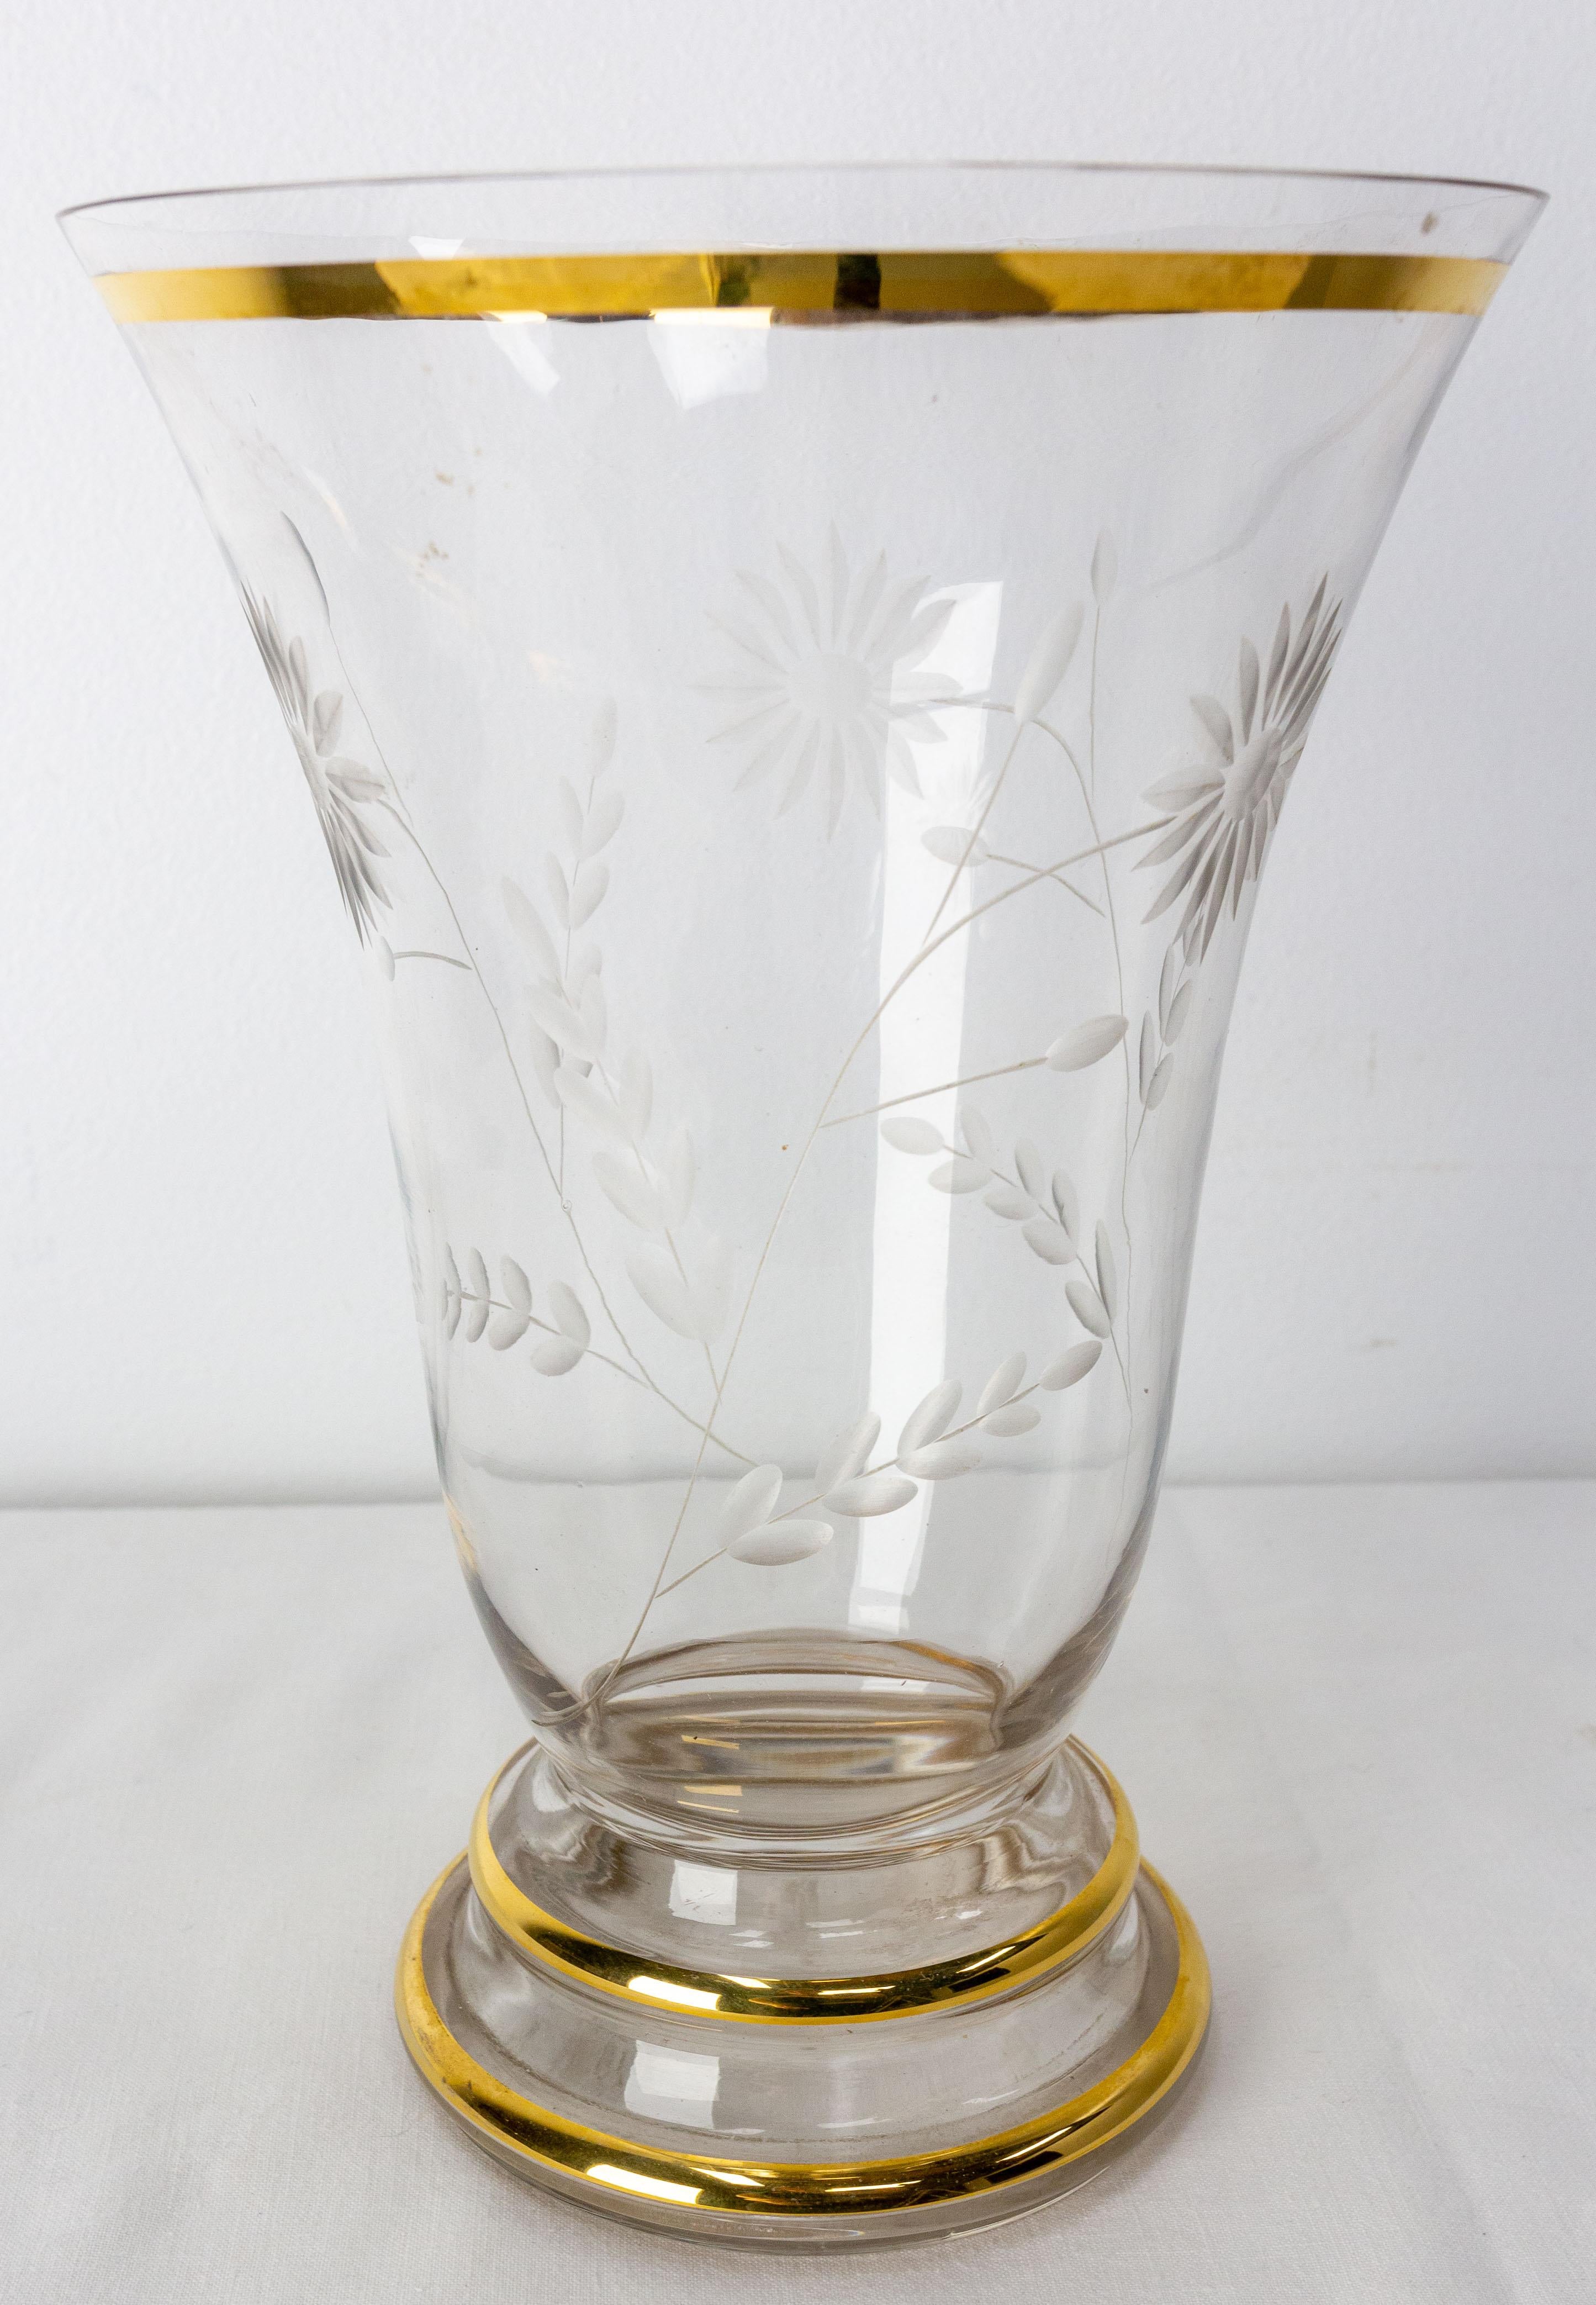 Vase vintage typique des années soixante.
Verre doré avec fleurs de marguerite gravées.
Français vers 1960
Très bon état.

Expédition :
Diam 16 H 23,5 cm 0,6 kg.